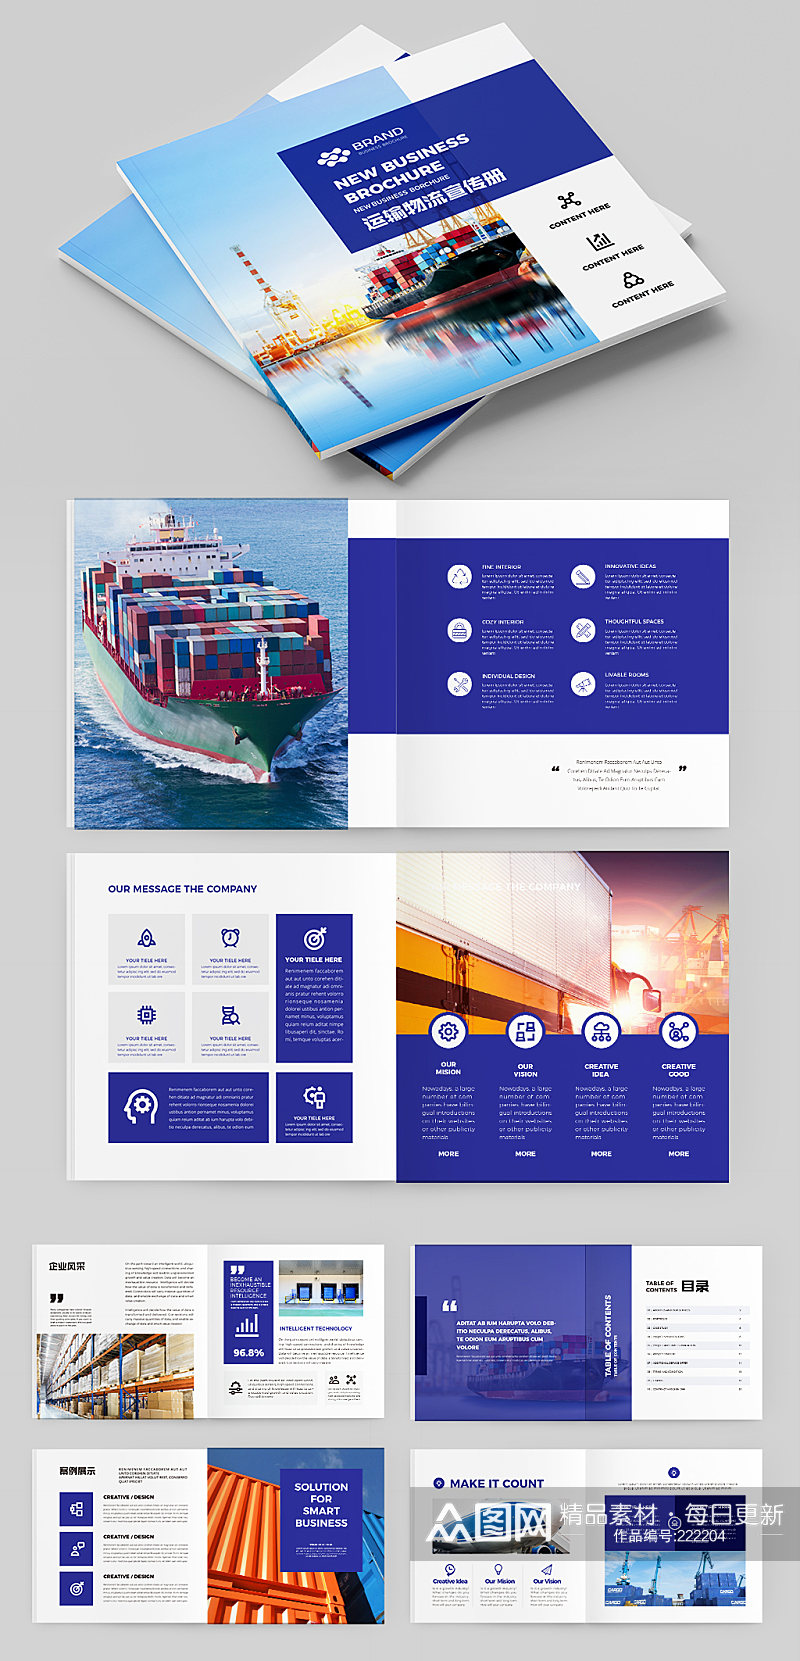 物流海运画册外贸宣传册设计素材